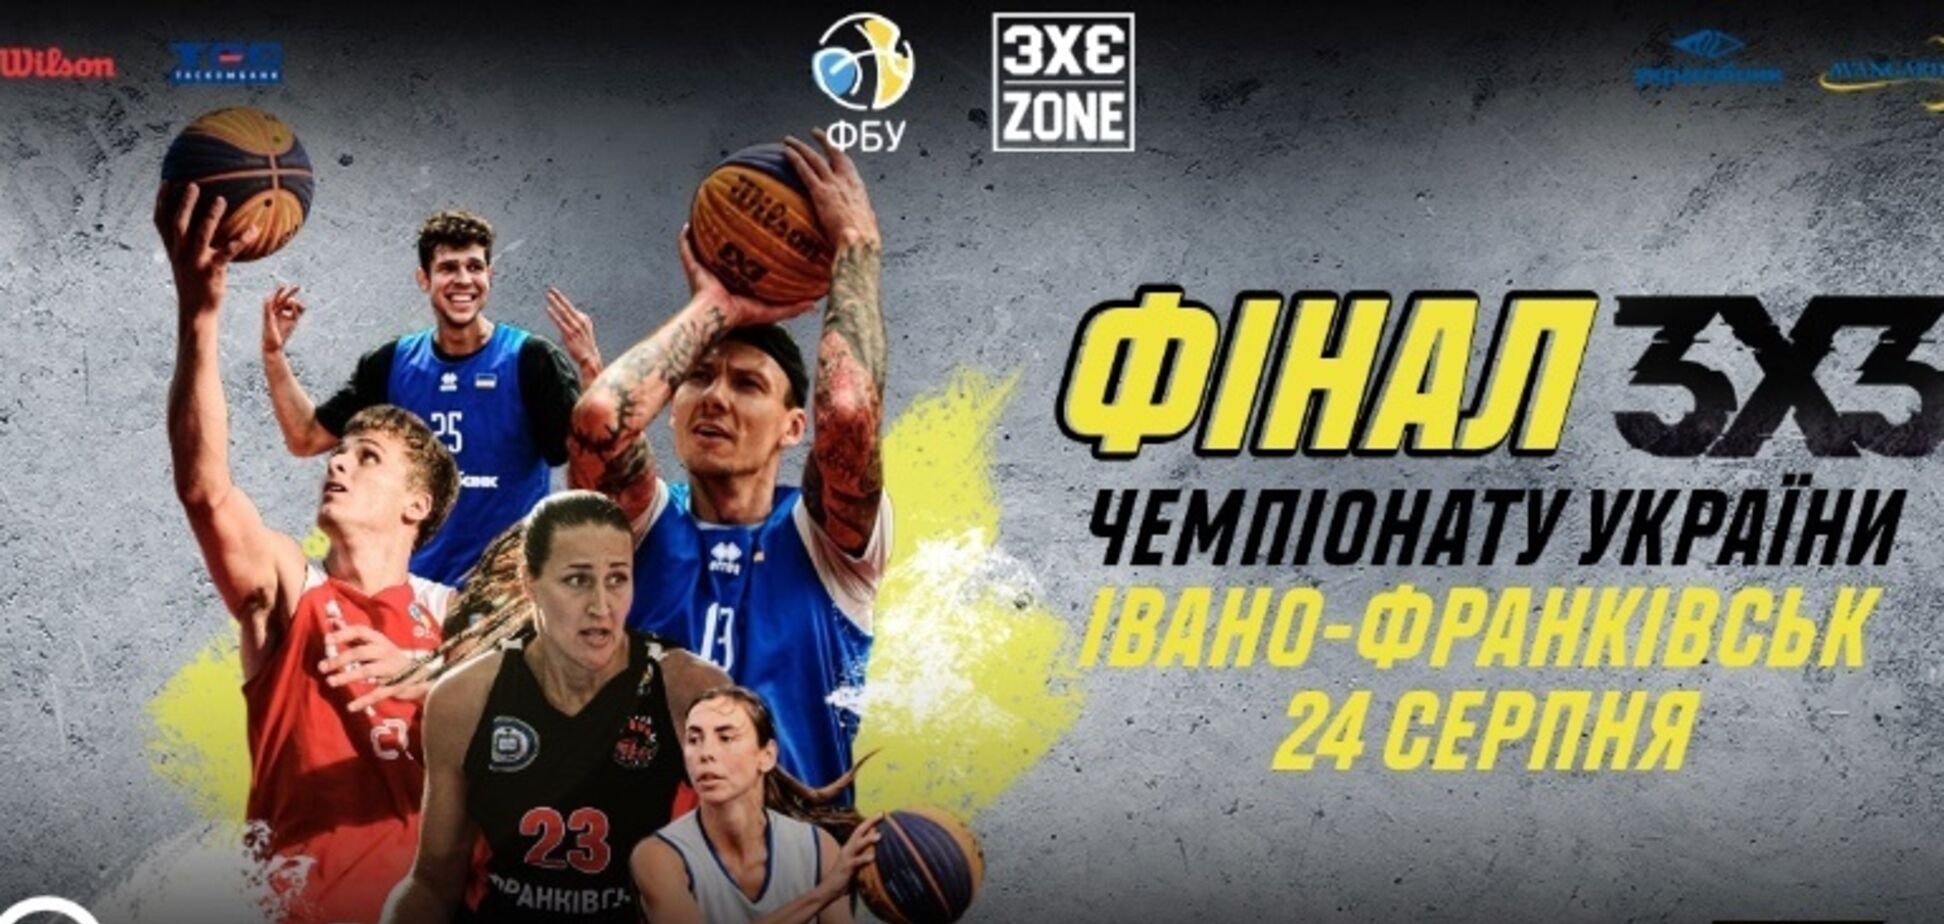 Финал чемпионата Украины 3х3 с грандиозным призовым фондом состоится в Ивано-Франковске